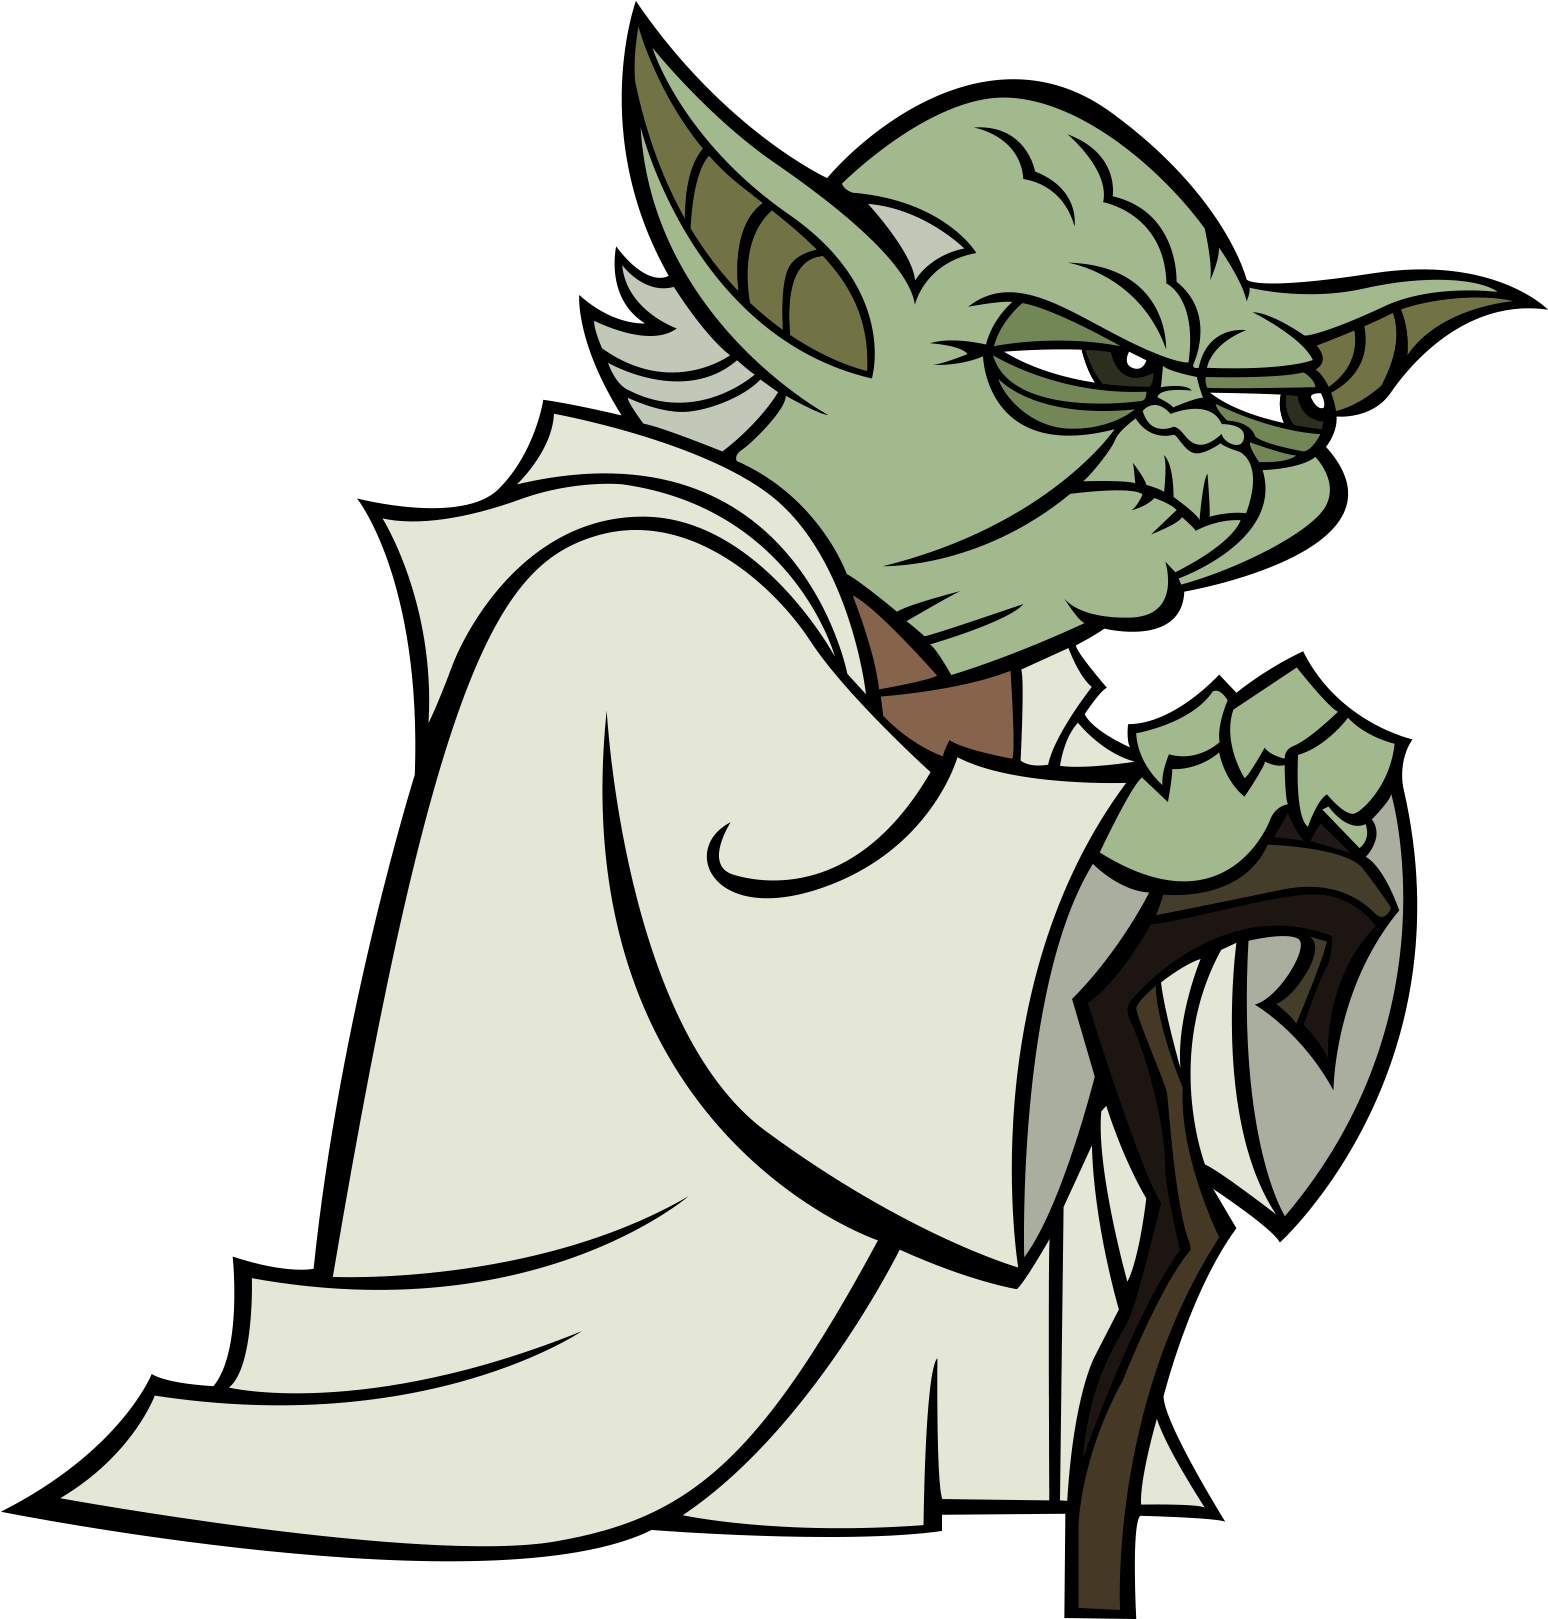 Yoda - Star Wars Yoda Vector (2000x2000)